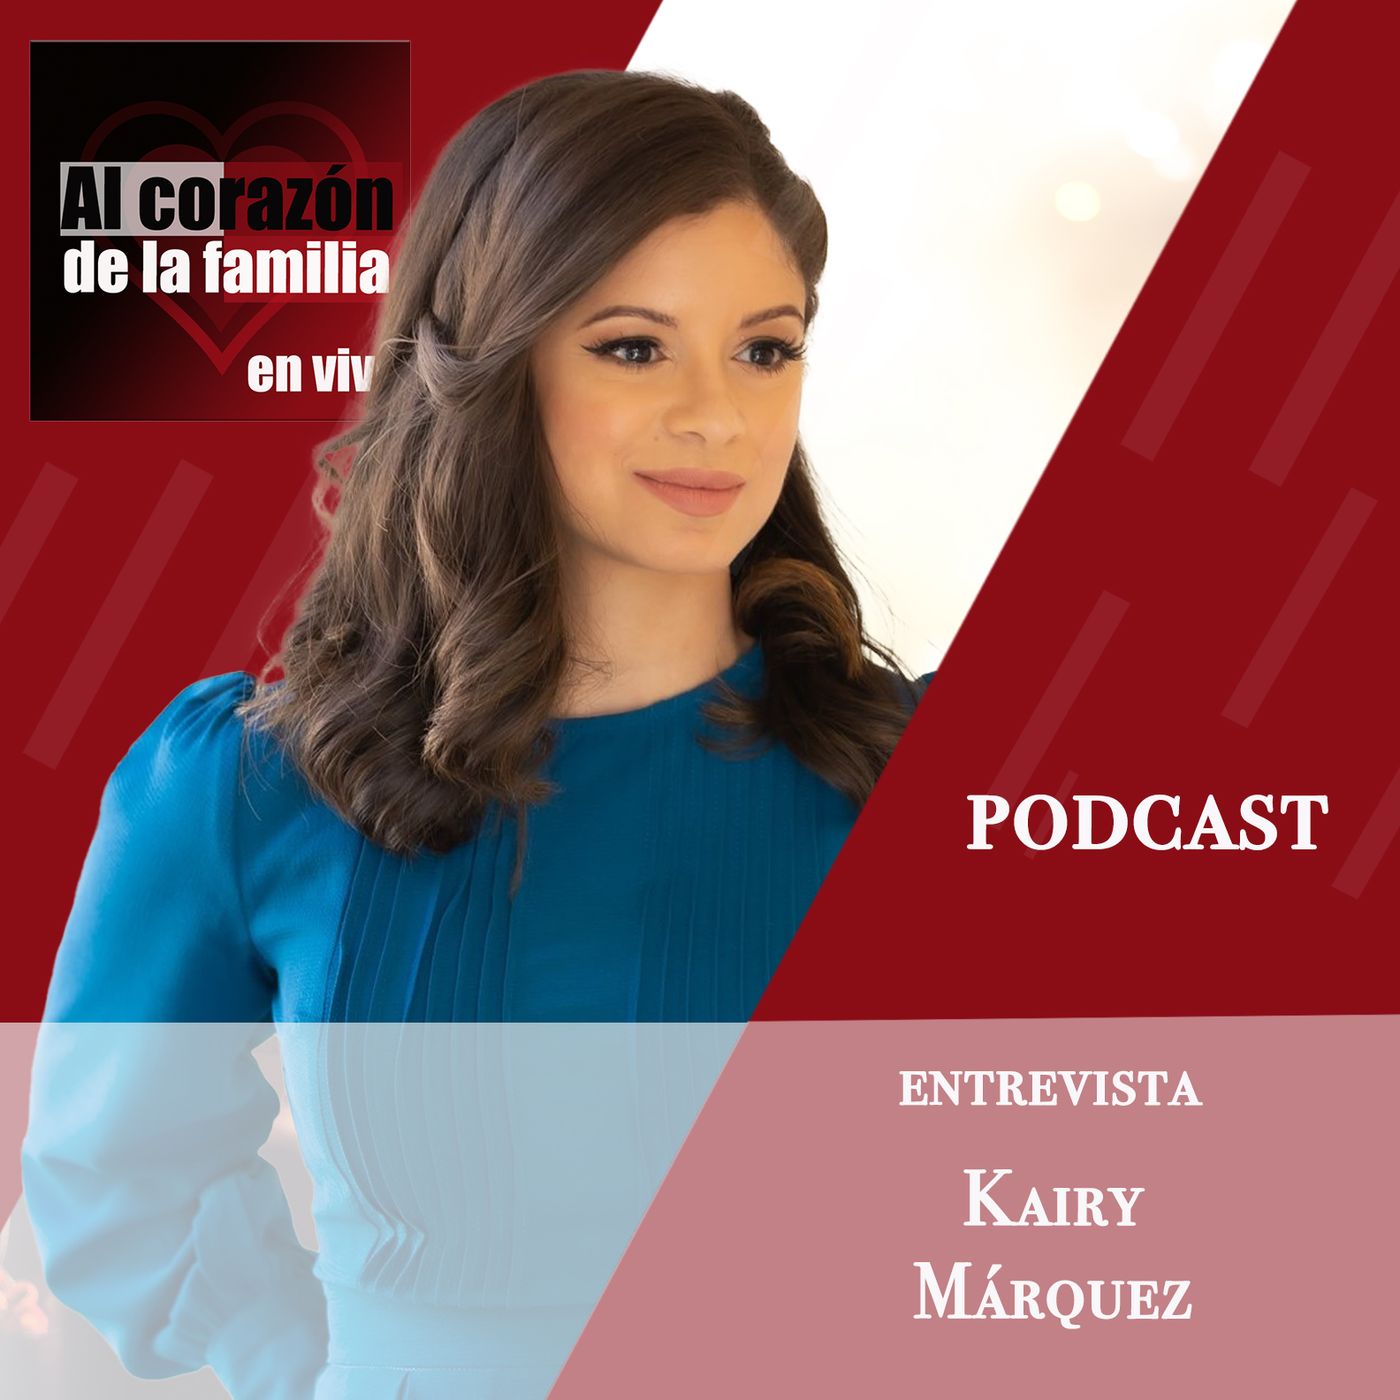 Entrevista Kairy Márquez podcast